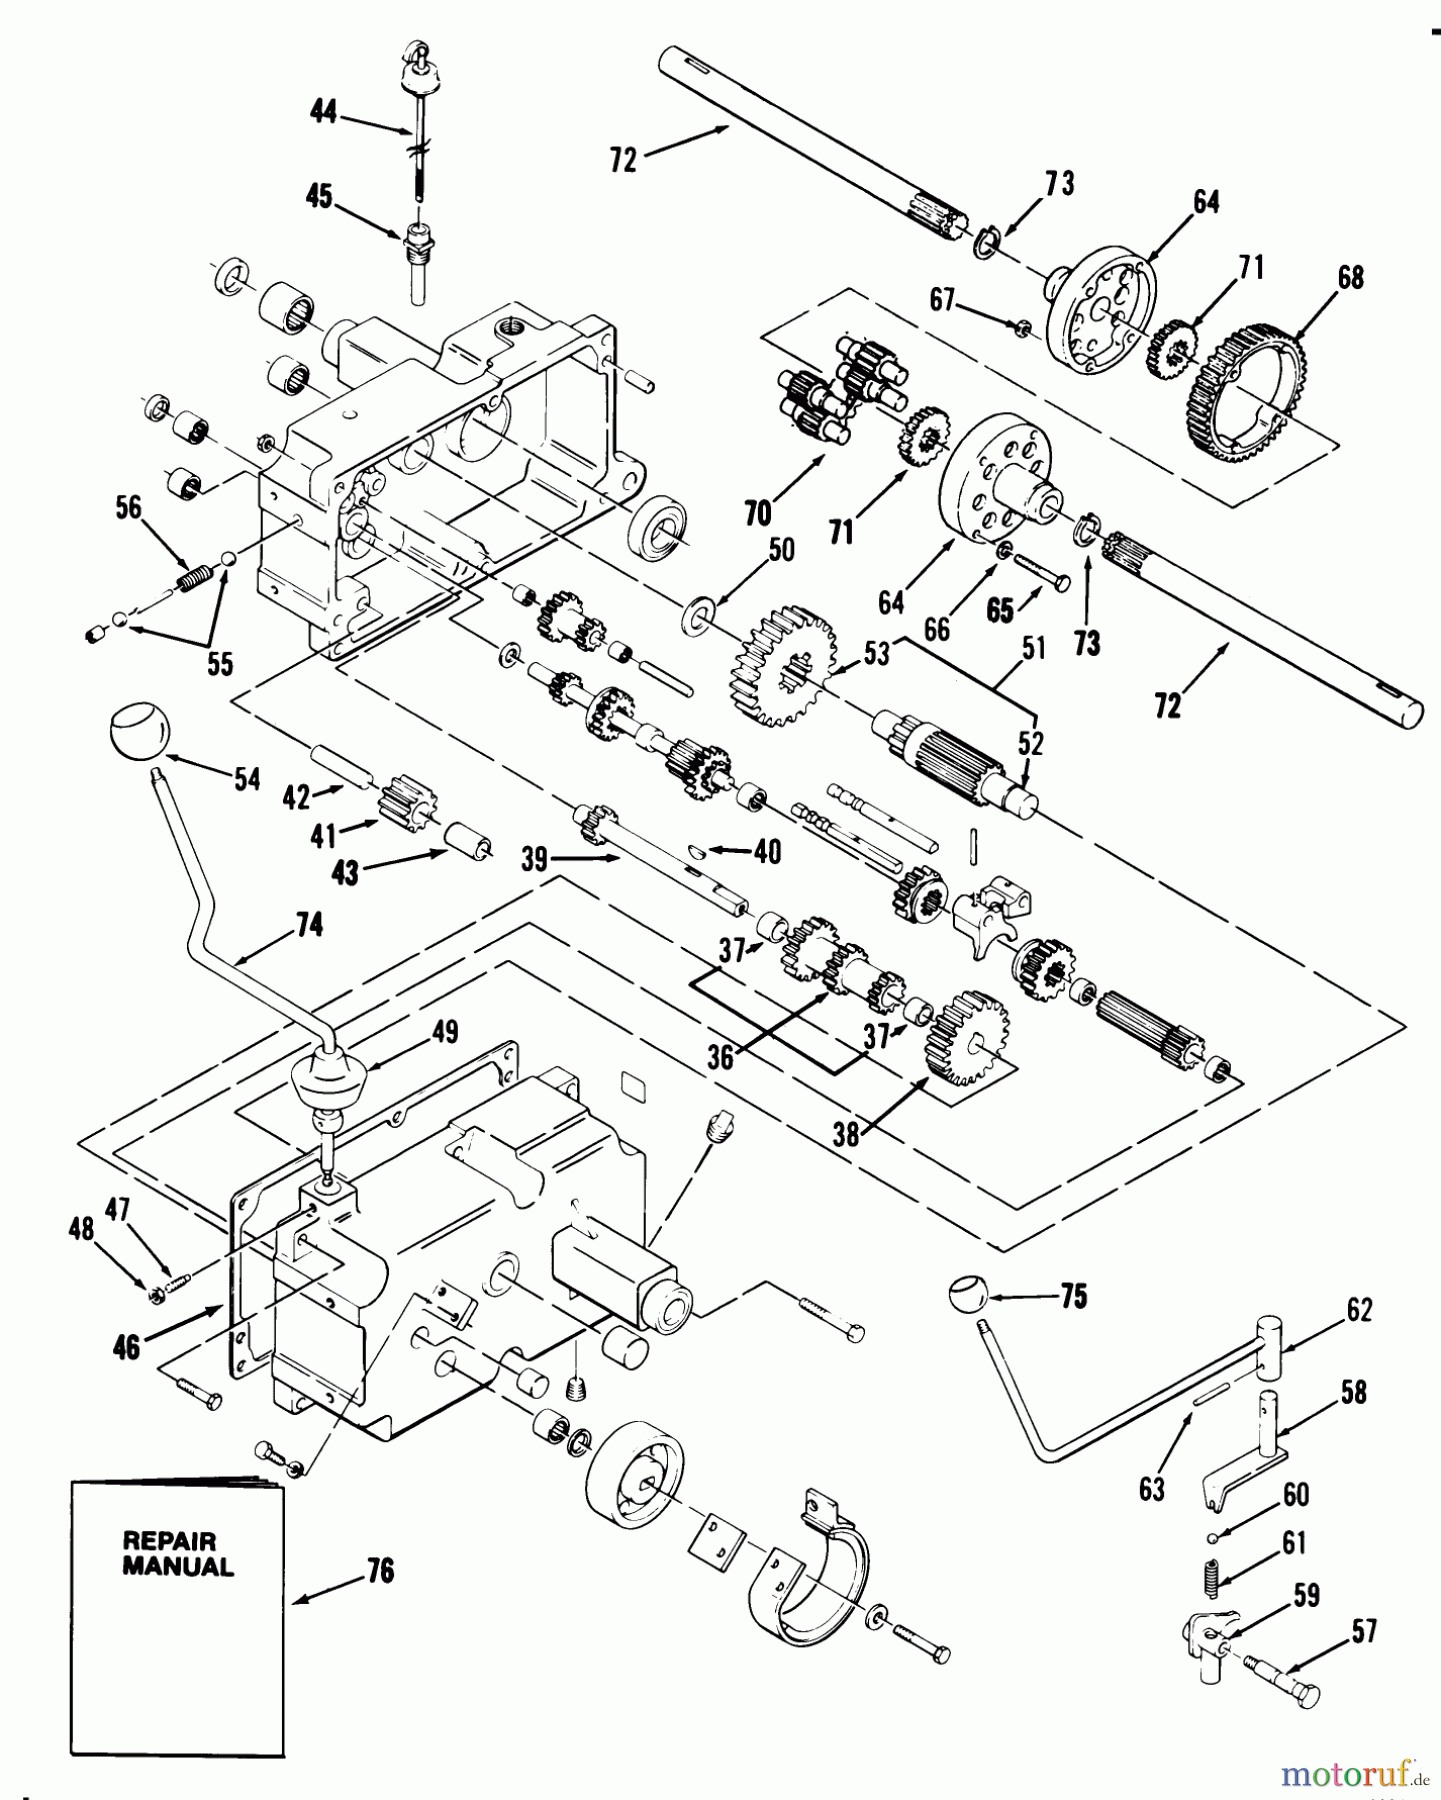  Toro Neu Mowers, Lawn & Garden Tractor Seite 1 21-10K805 (310-8) - Toro 310-8 Garden Tractor, 1988 MECHANICAL TRANSMISSION-8-SPEED #2